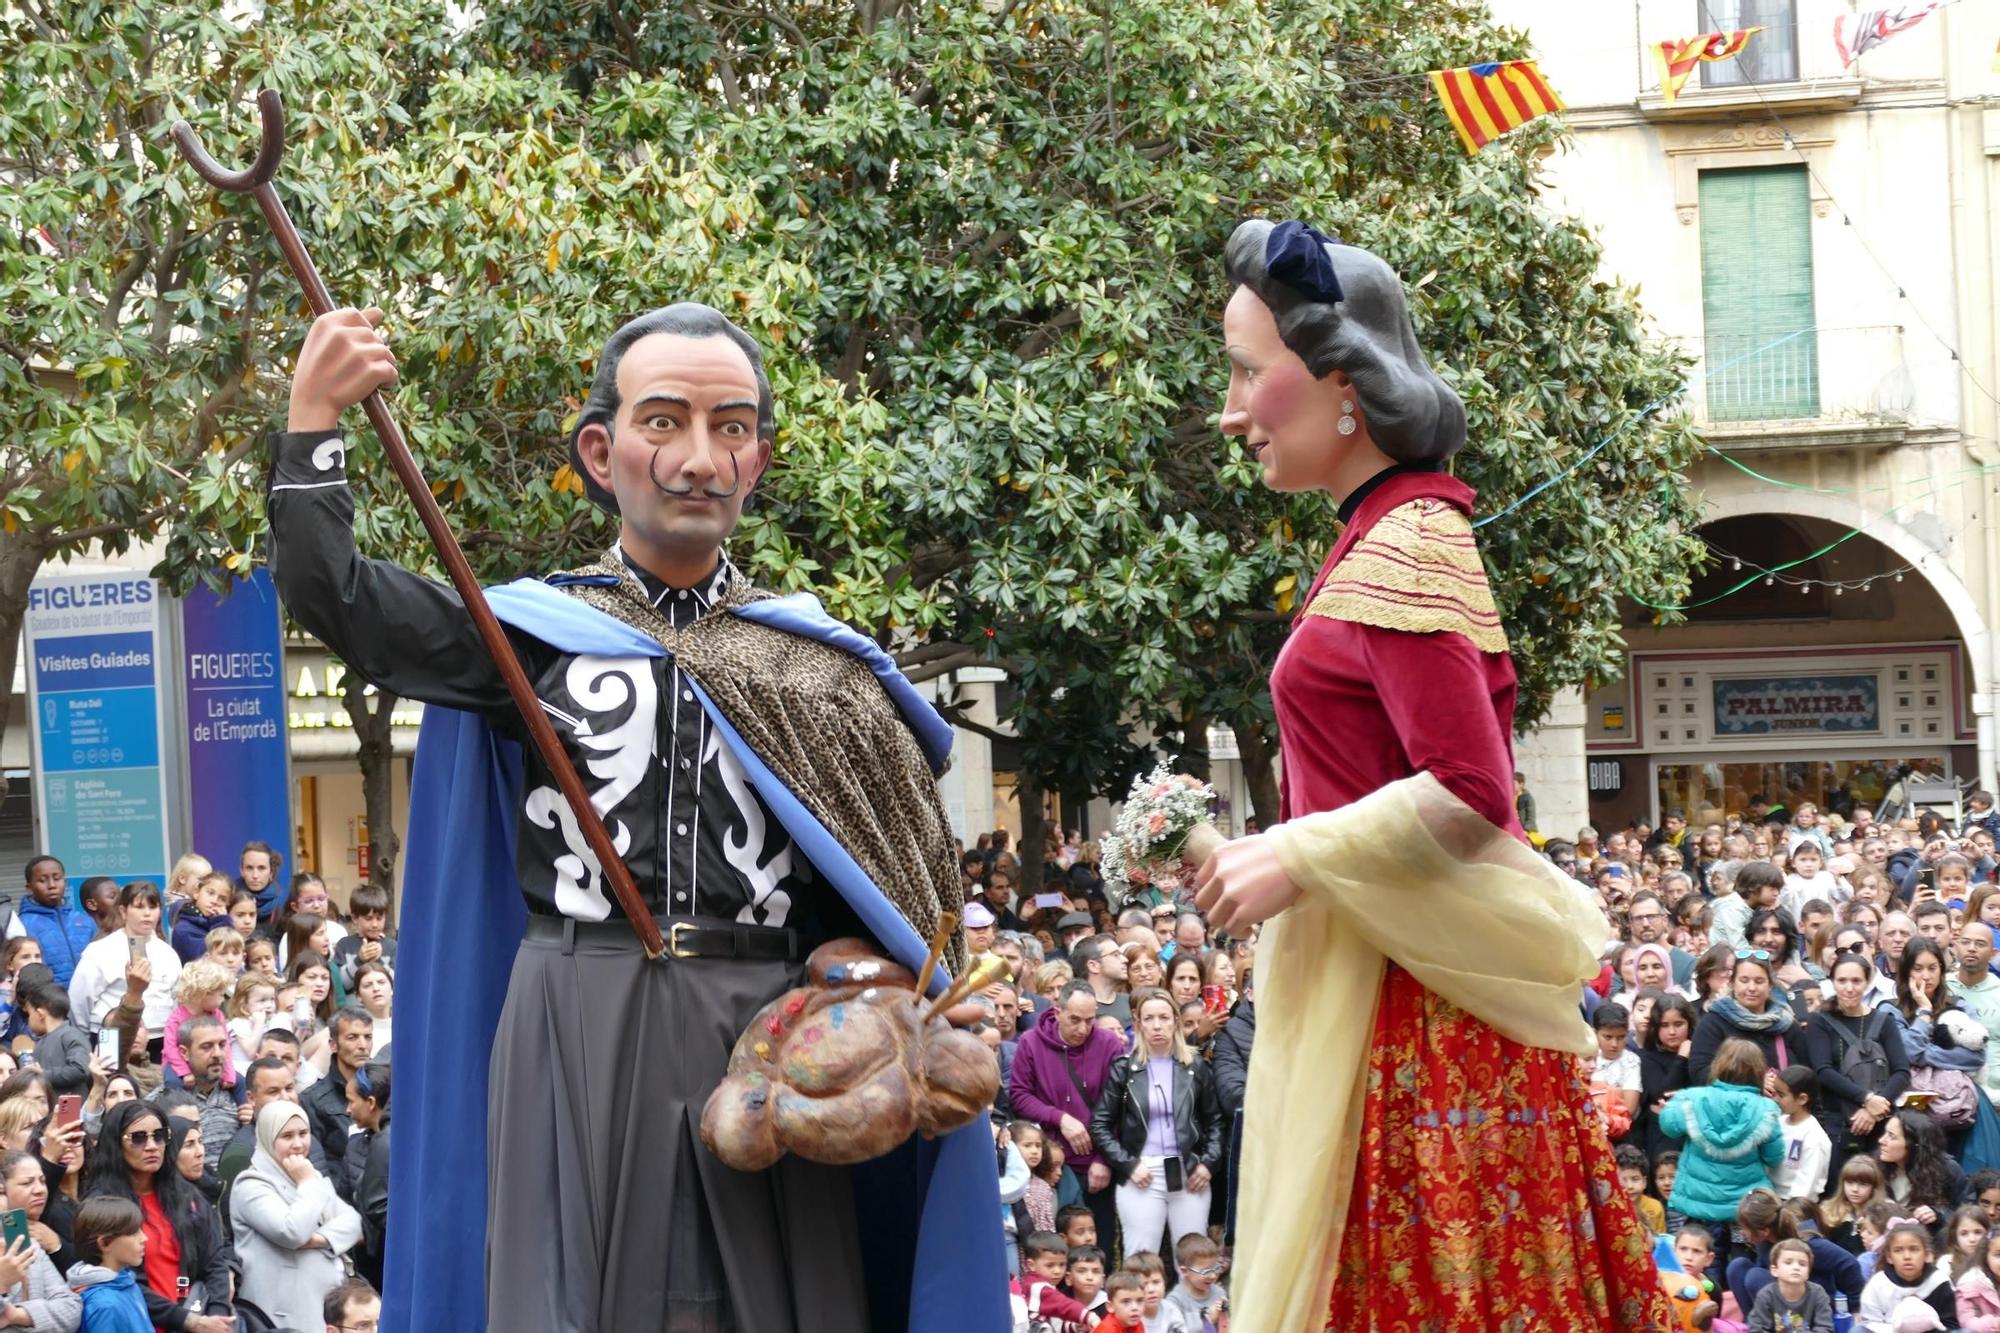 El seguici popular i el pregó del periodista Carles Pujol donen el tret de sortida a les Fires i Festes de la Santa Creu